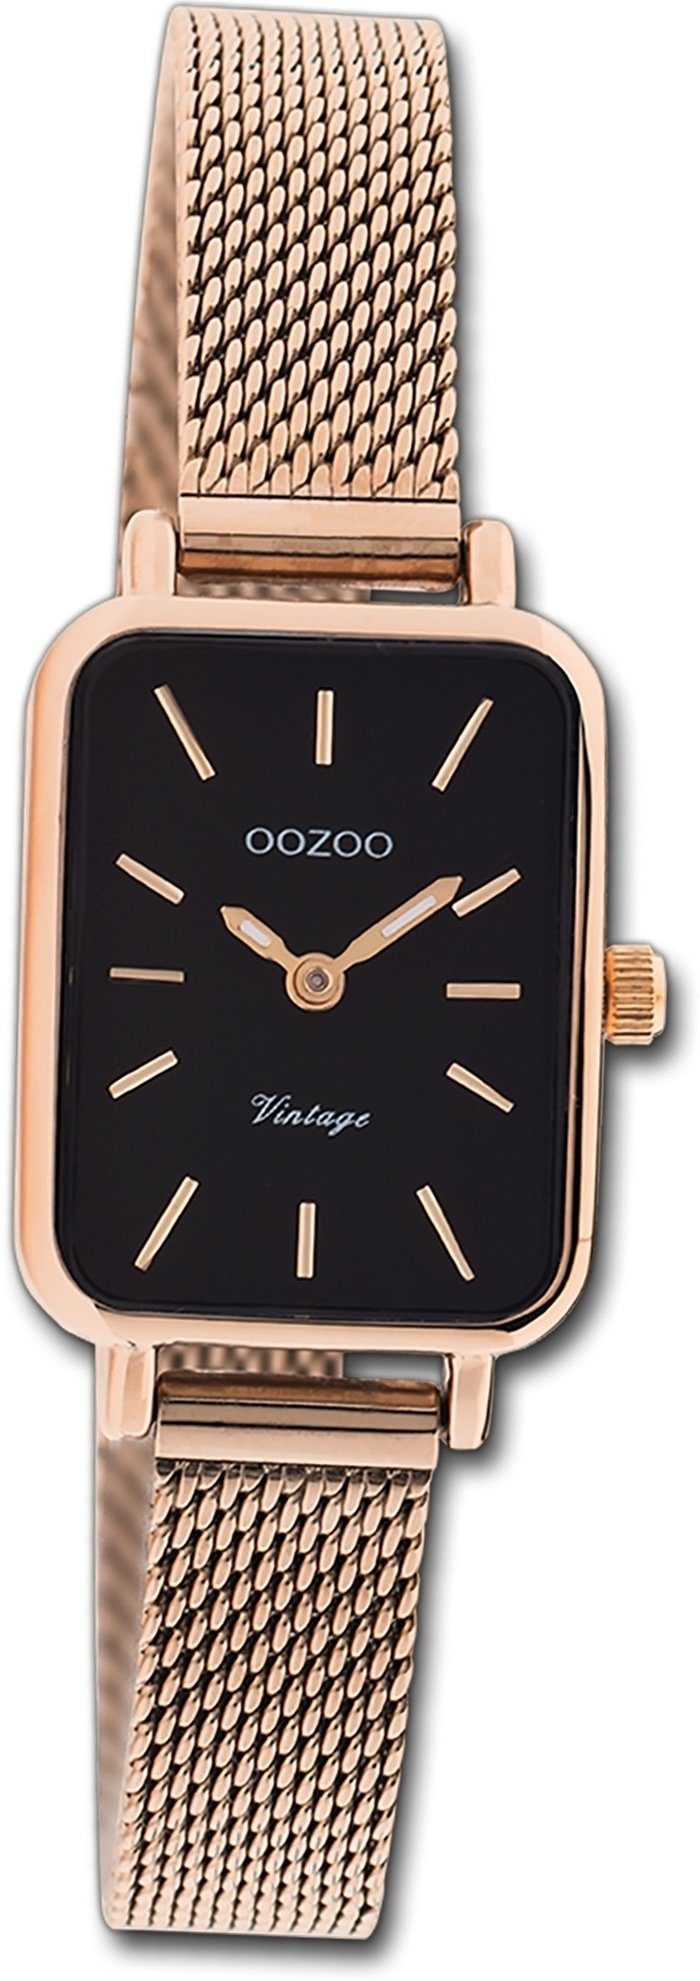 Gehäuse, klein rosegold, Vintage Damen 21x26mm) Armbanduhr Oozoo Quarzuhr OOZOO Series, (ca. rechteckiges Damenuhr